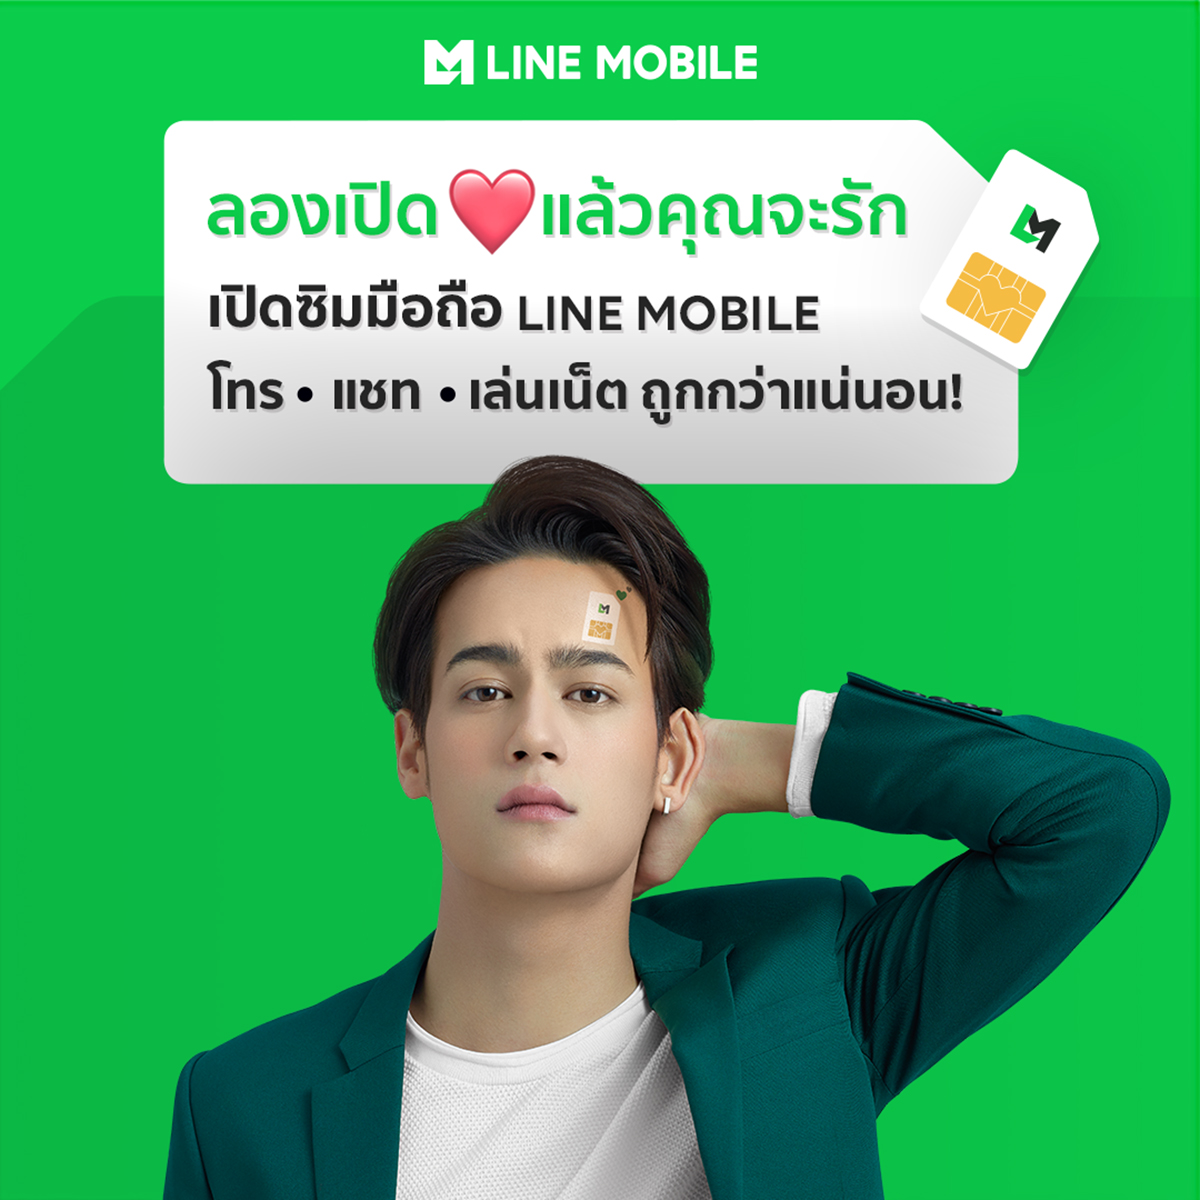 LINE MOBILE ฉีกกฎการทำโฆษณา ใช้สื่อพื้นที่โฆษณาบนตัวคน ครั้งแรกในไทย